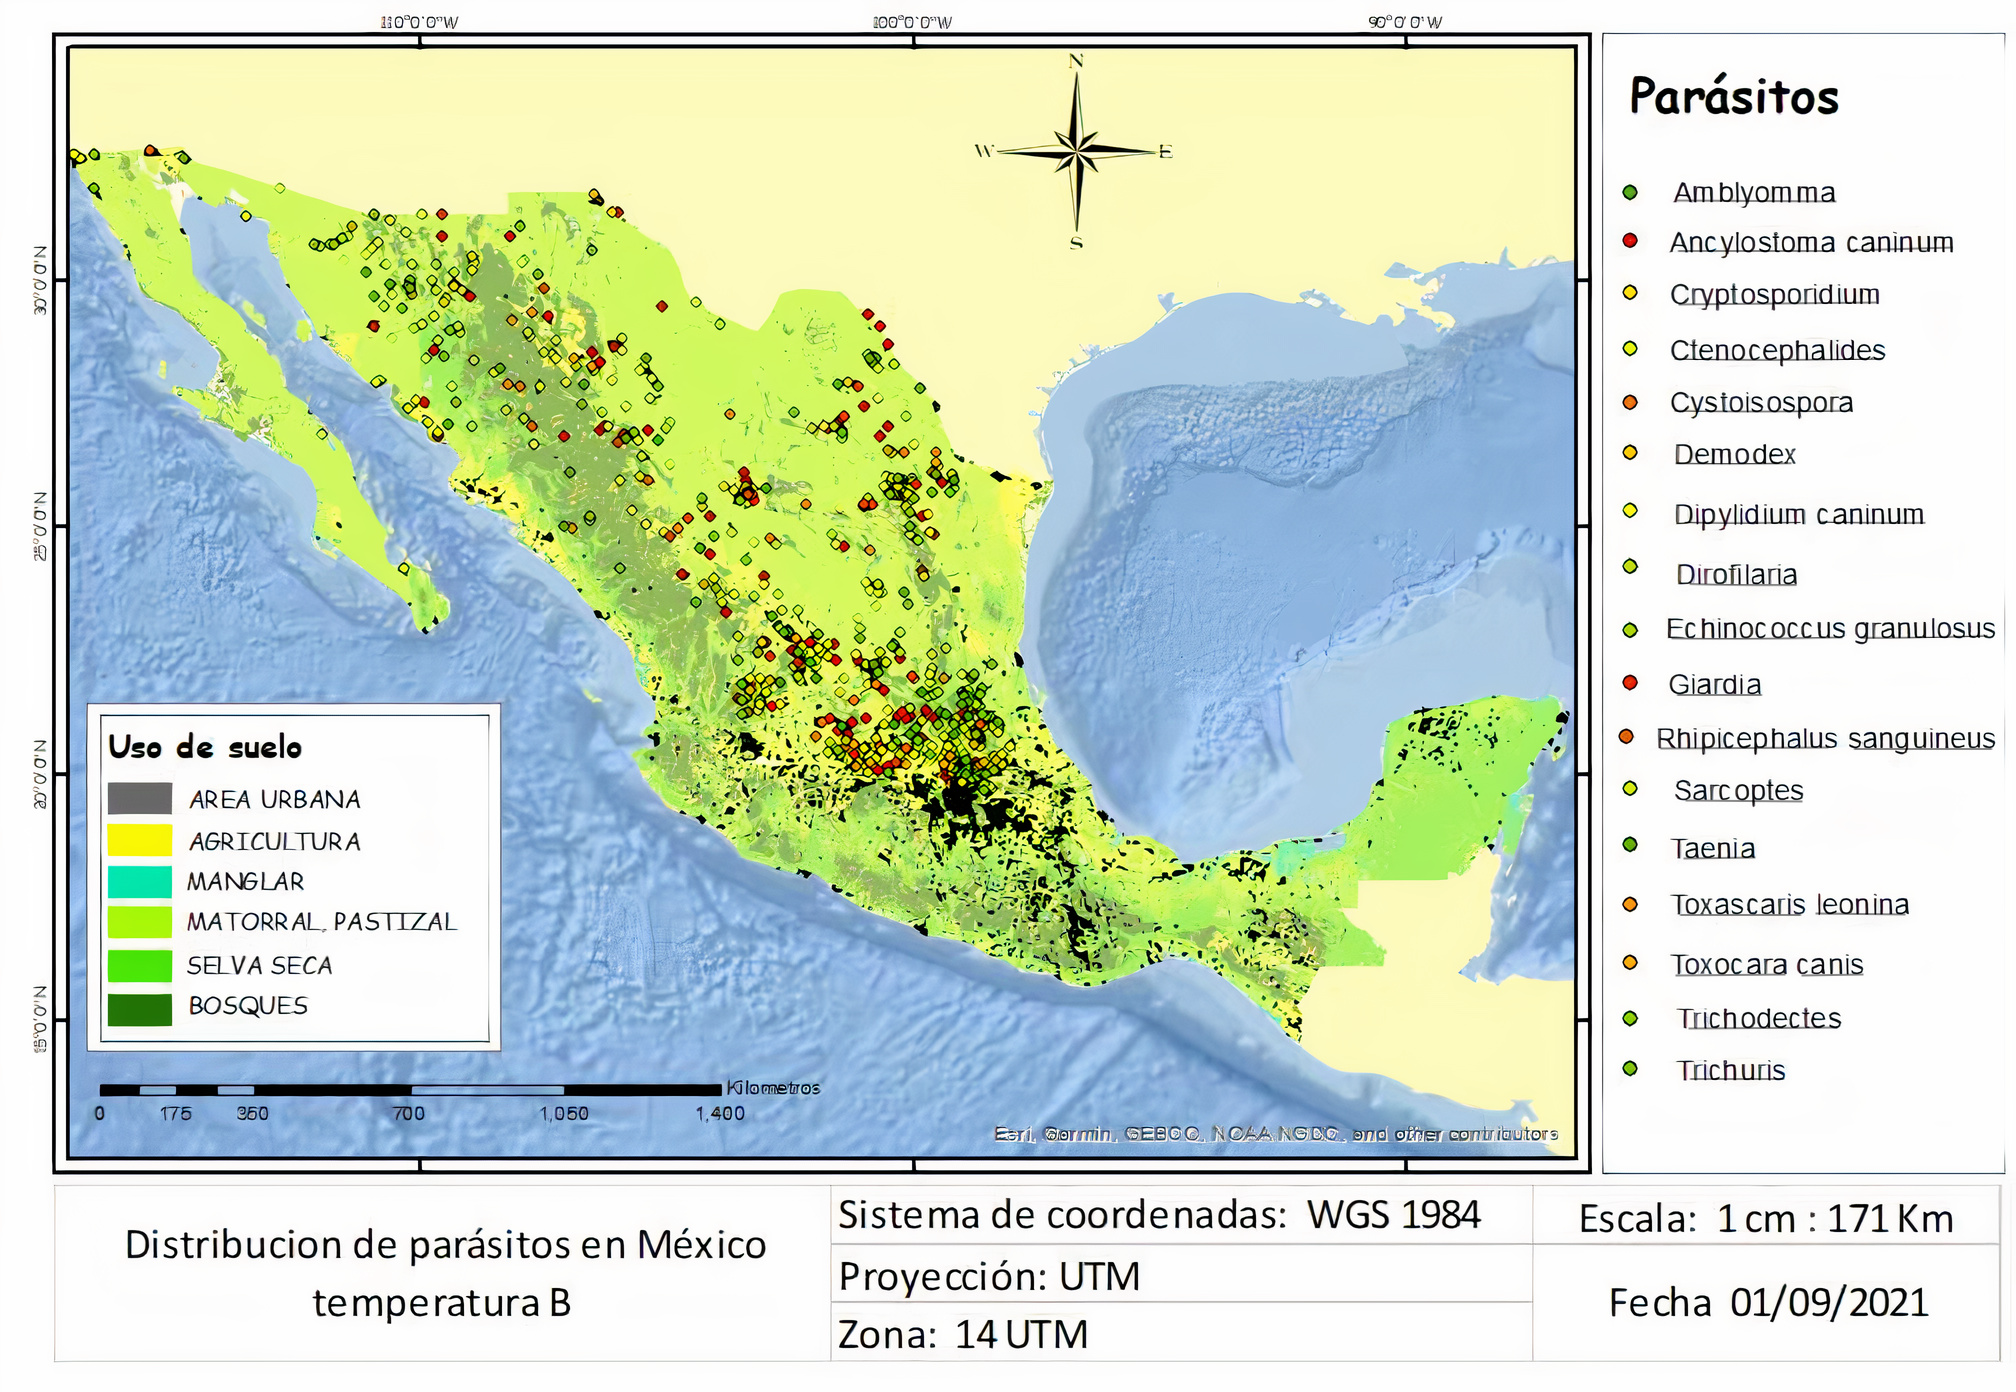 Distribución de parásitos en México, temperatura B.